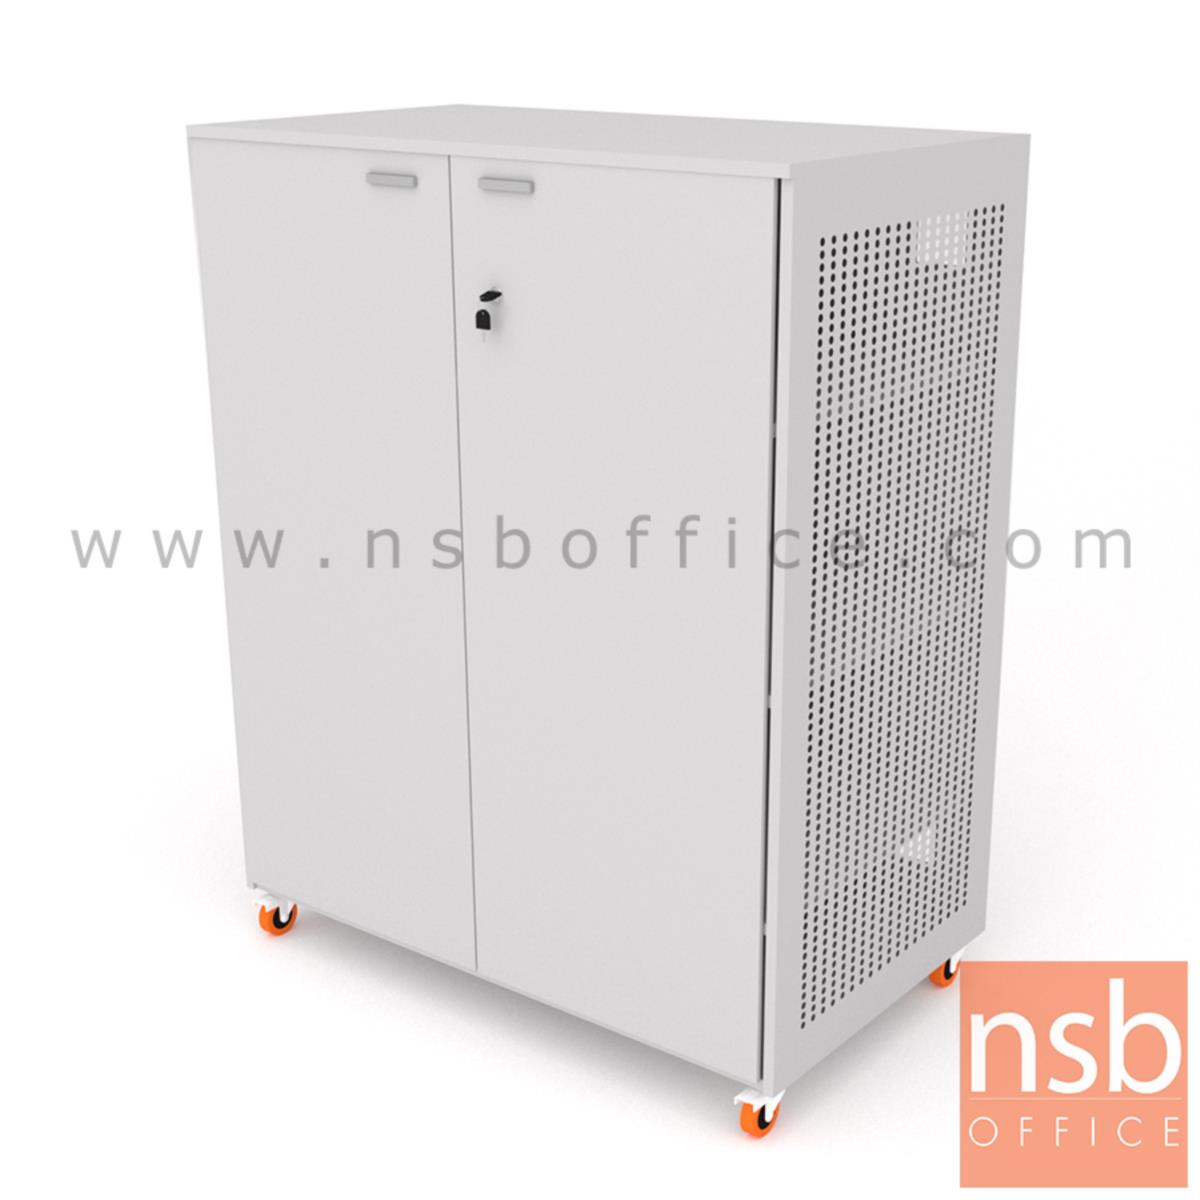 C12A013:ตู้เก็บเครื่องมืออุปกรณ์ไฟฟ้าแบบเคลื่อนที่ได้  รุ่น NSB-2013 ขนาด 120W*150H cm. ลูกล้อพียู (รับผลิตนอกแบบ)